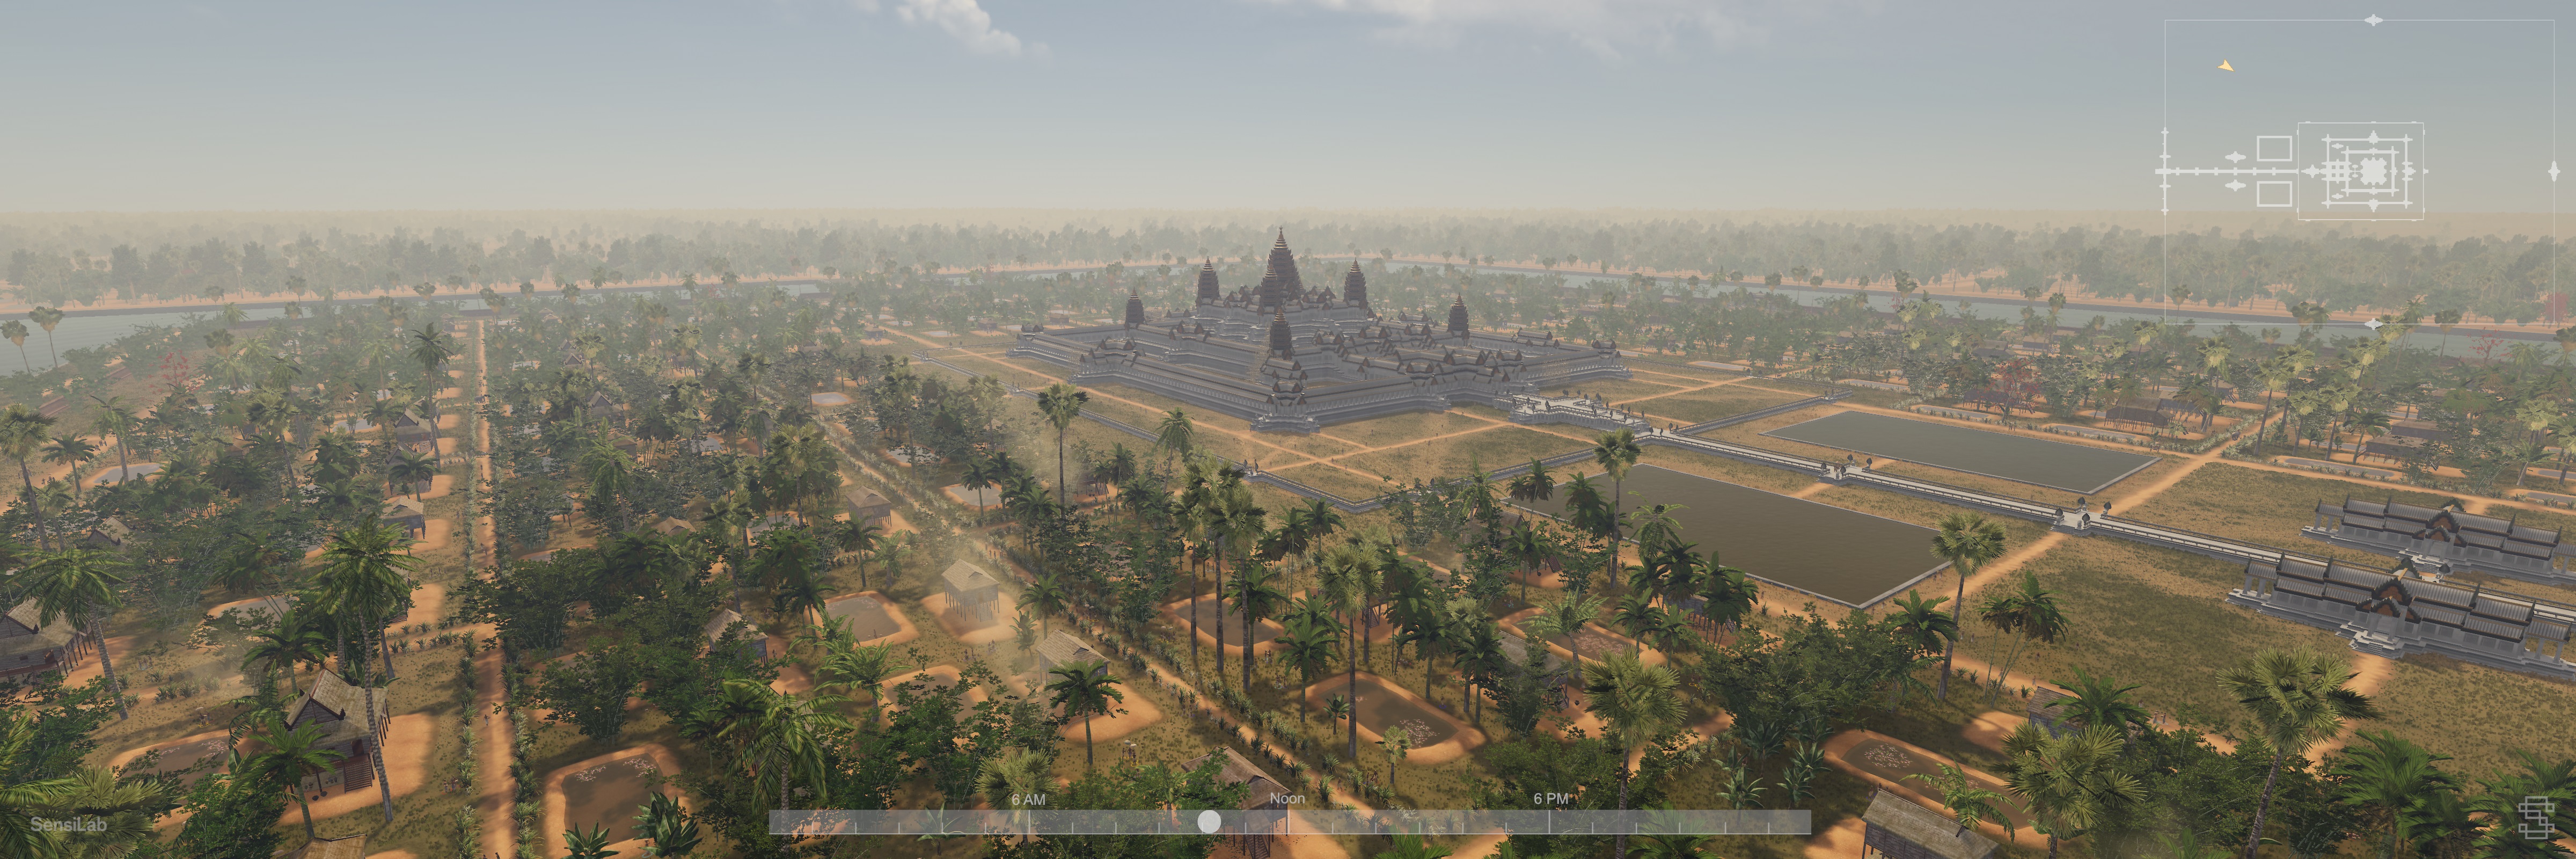 Visualising Angkor